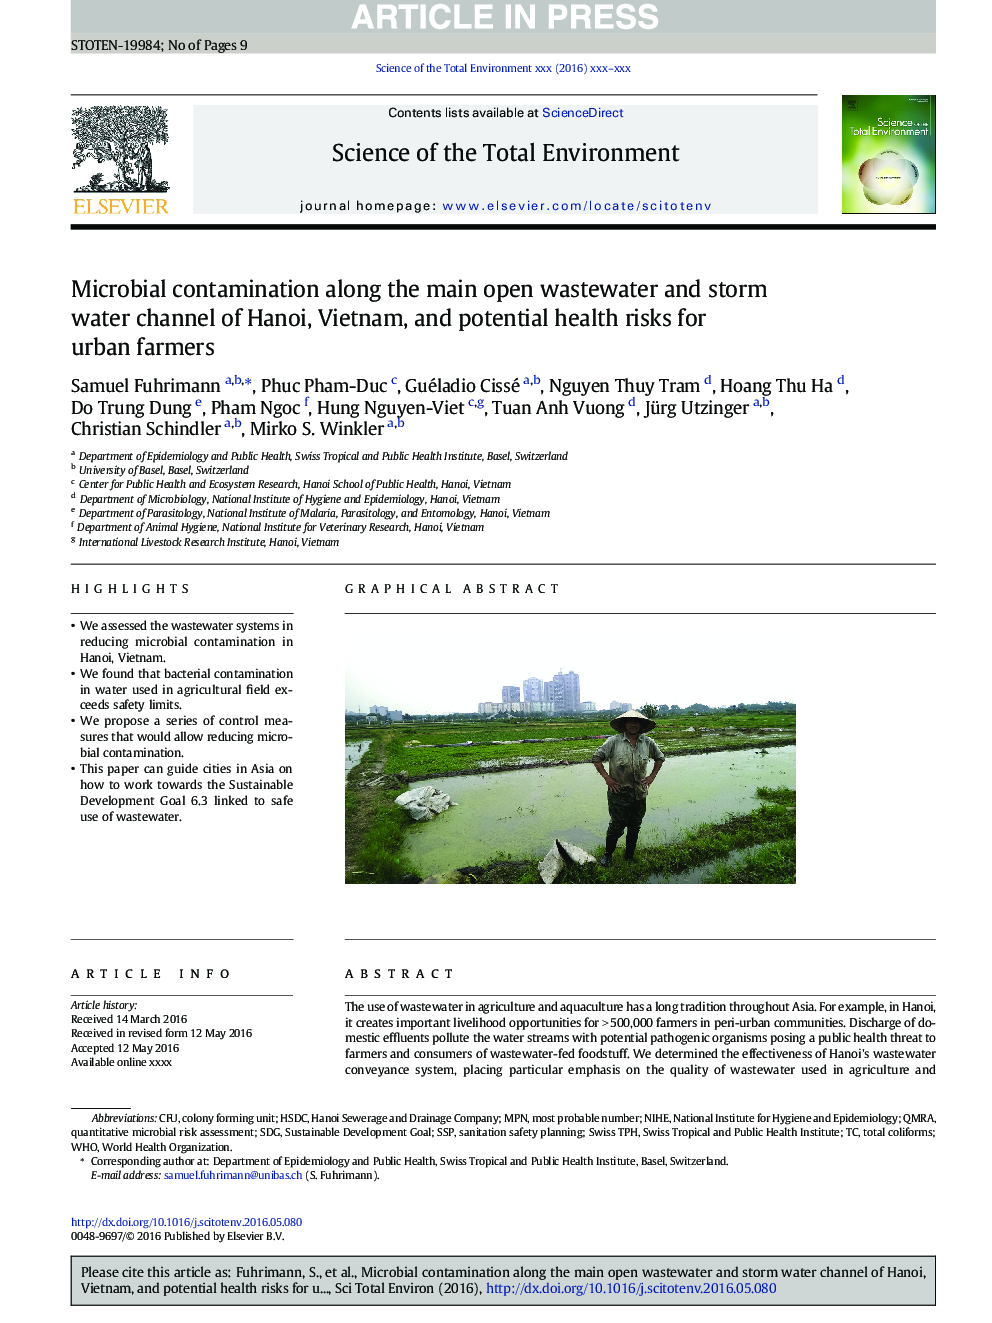 آلودگی میکروبی در امتداد جریان اصلی فاضلاب باز و کانال طوفان آبهای هانوی، ویتنام و خطرات بالقوه سلامت برای کشاورزان شهری 